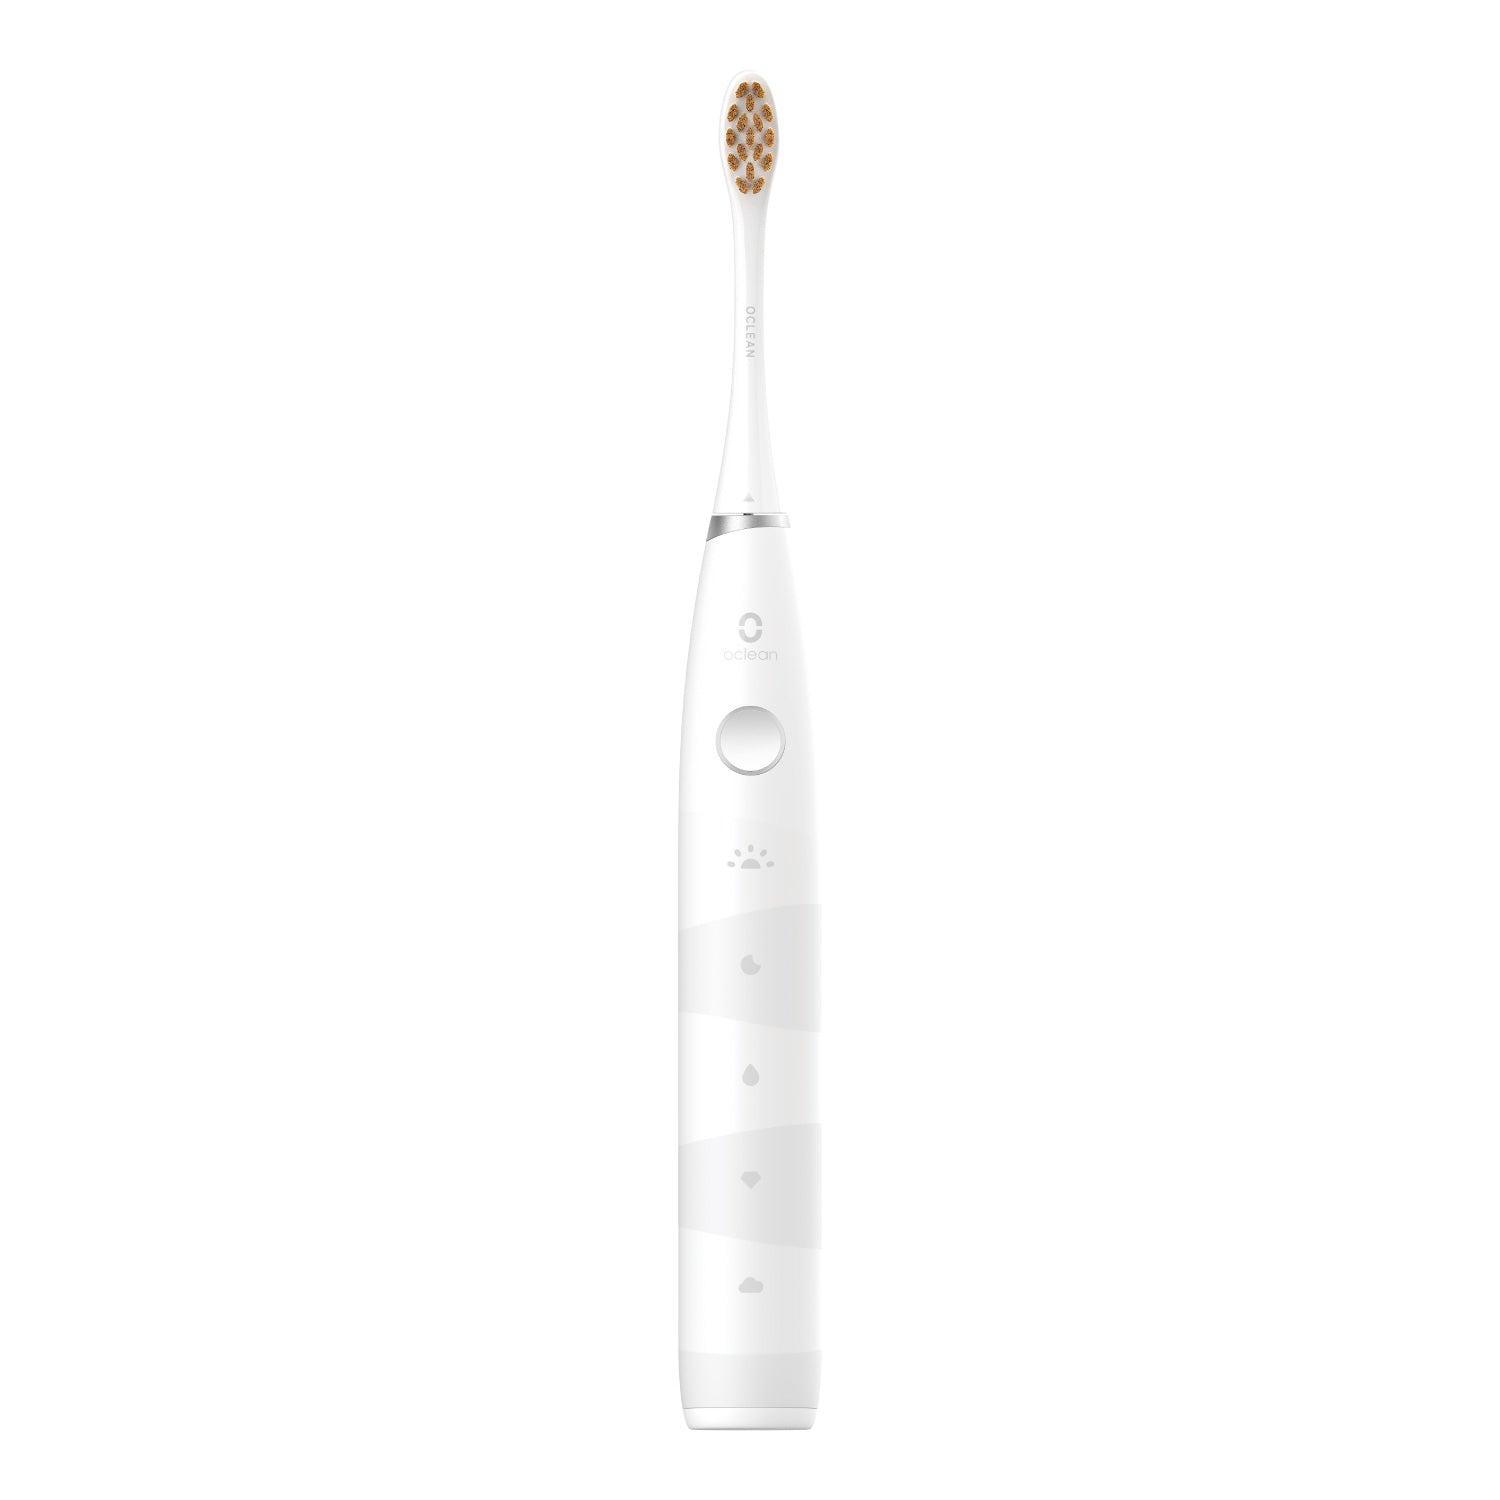 Oclean Flow Elektrische Schallzahnbürste Toothbrushes Oclean Weiß - Oclean